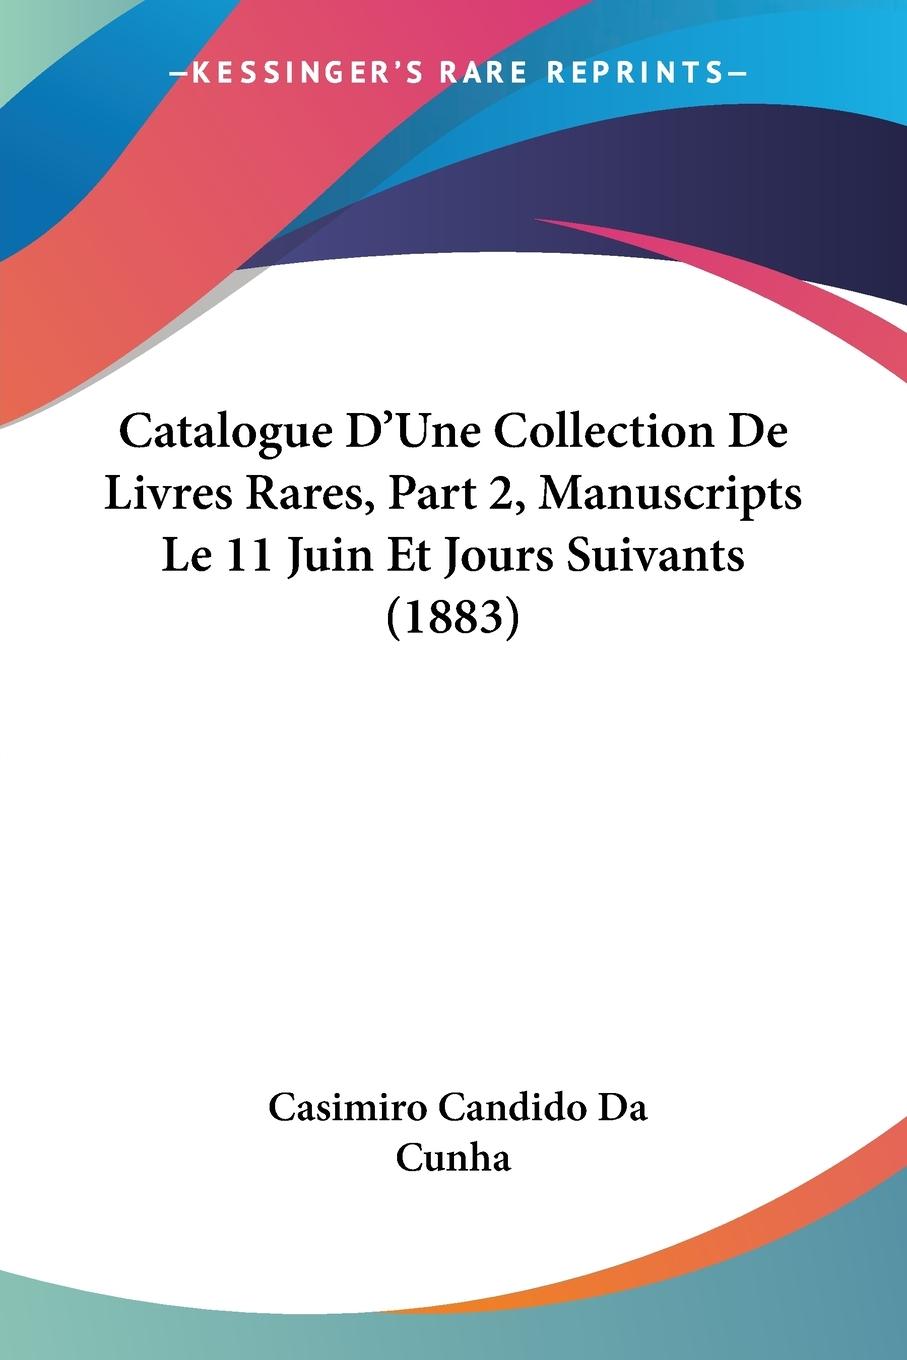 Catalogue D Une Collection De Livres Rares, Part 2, Manuscripts Le 11 Juin Et Jours Suivants (1883) - Da Cunha, Casimiro Candido